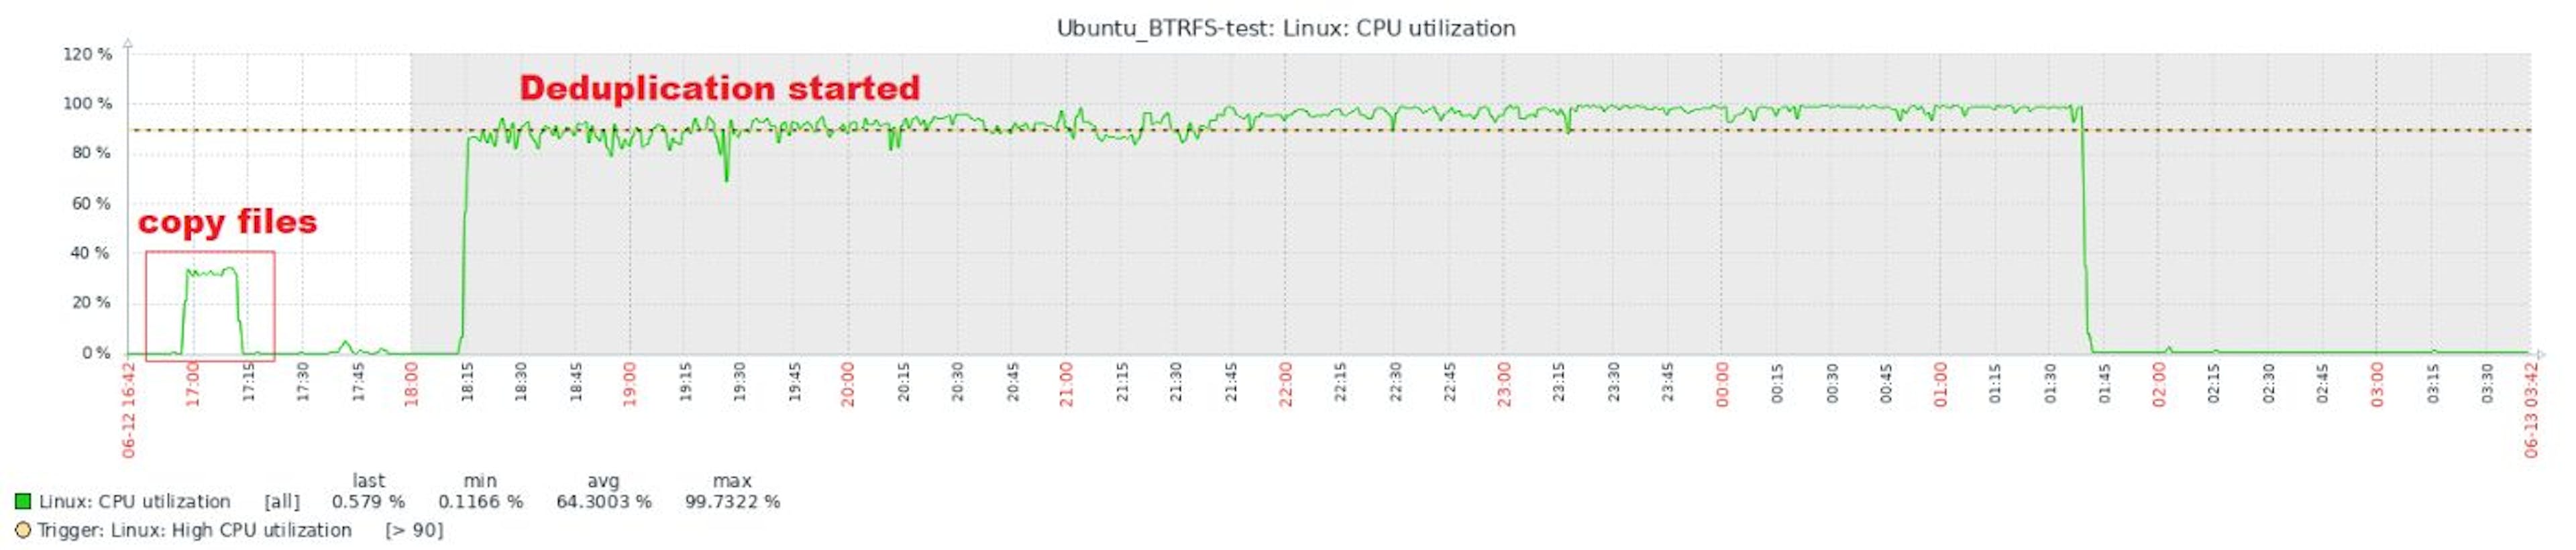 2.7.1 BTRFS CPU utilization full